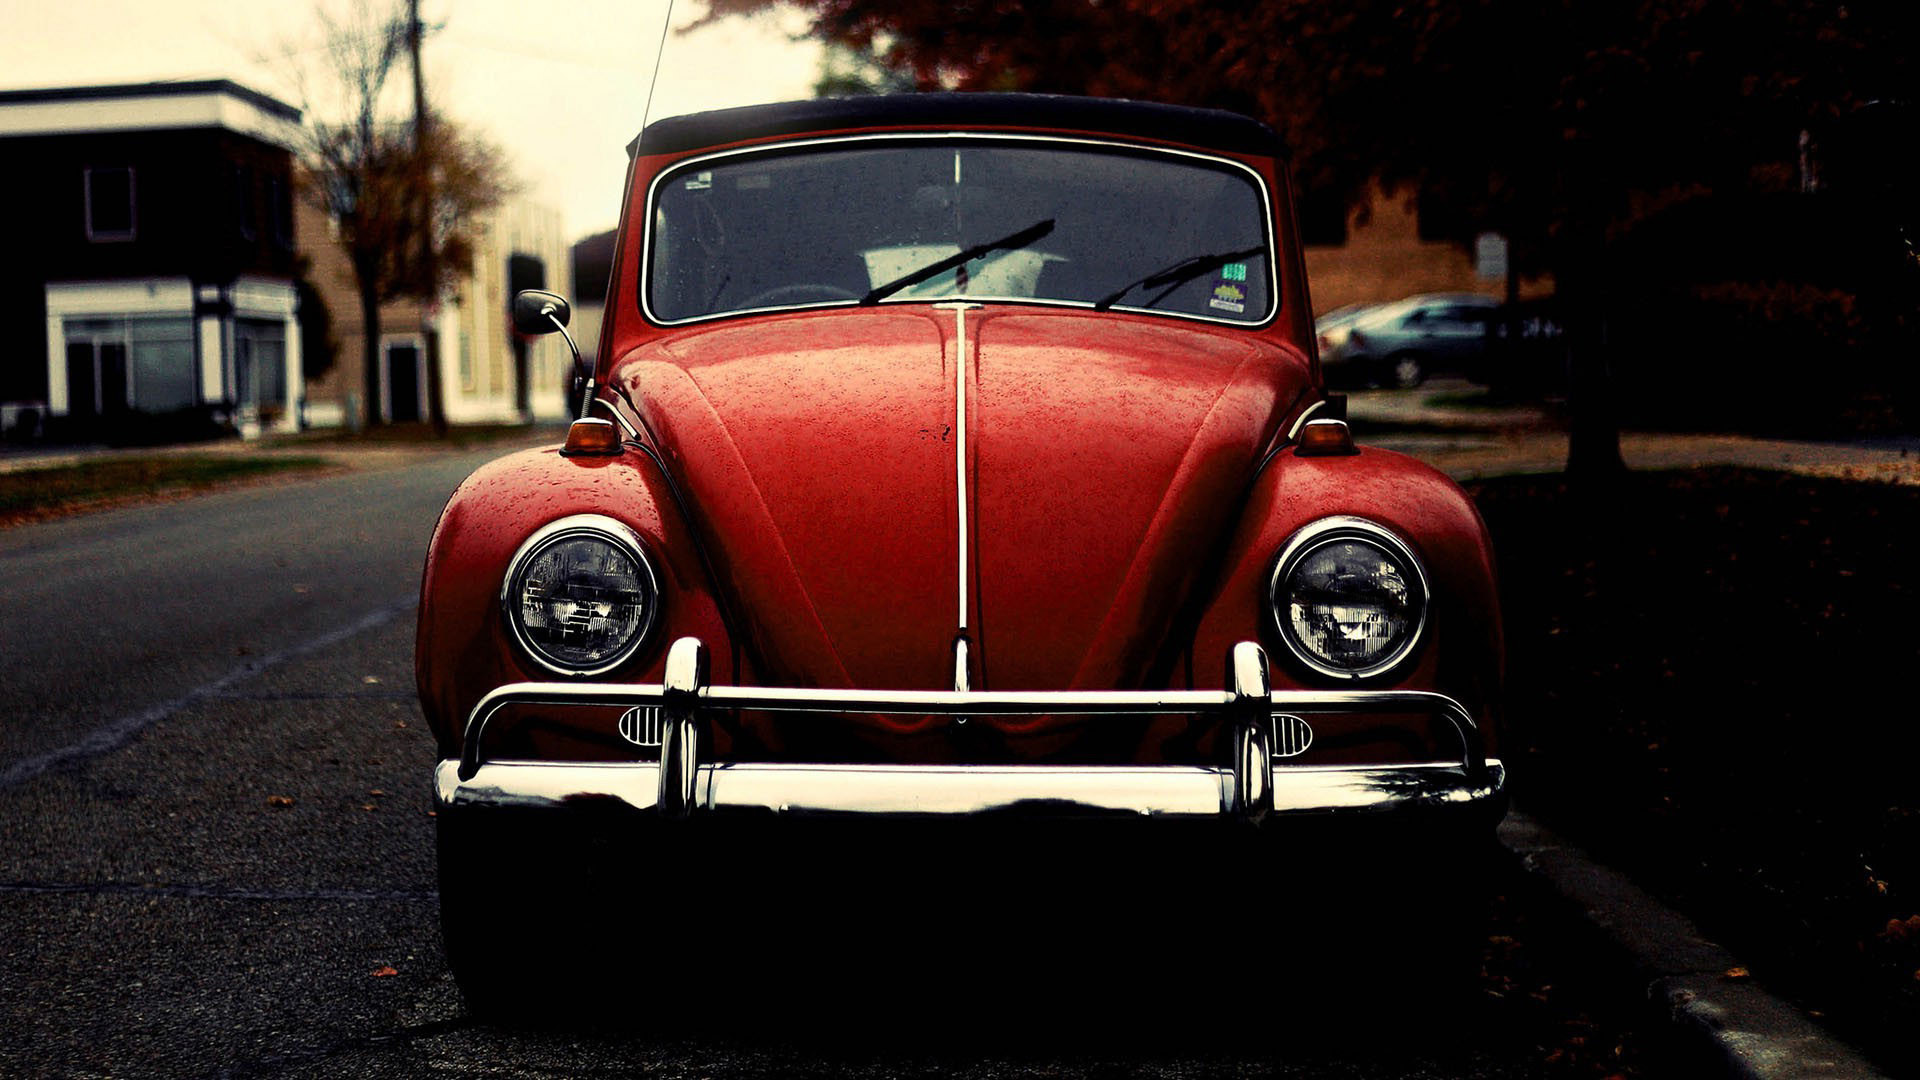 1920x1080 Volkswagen Beetle images Volkswagen Beetle (Volkswagen KÃ¤fer ... old vw  beetle wallpaper ...